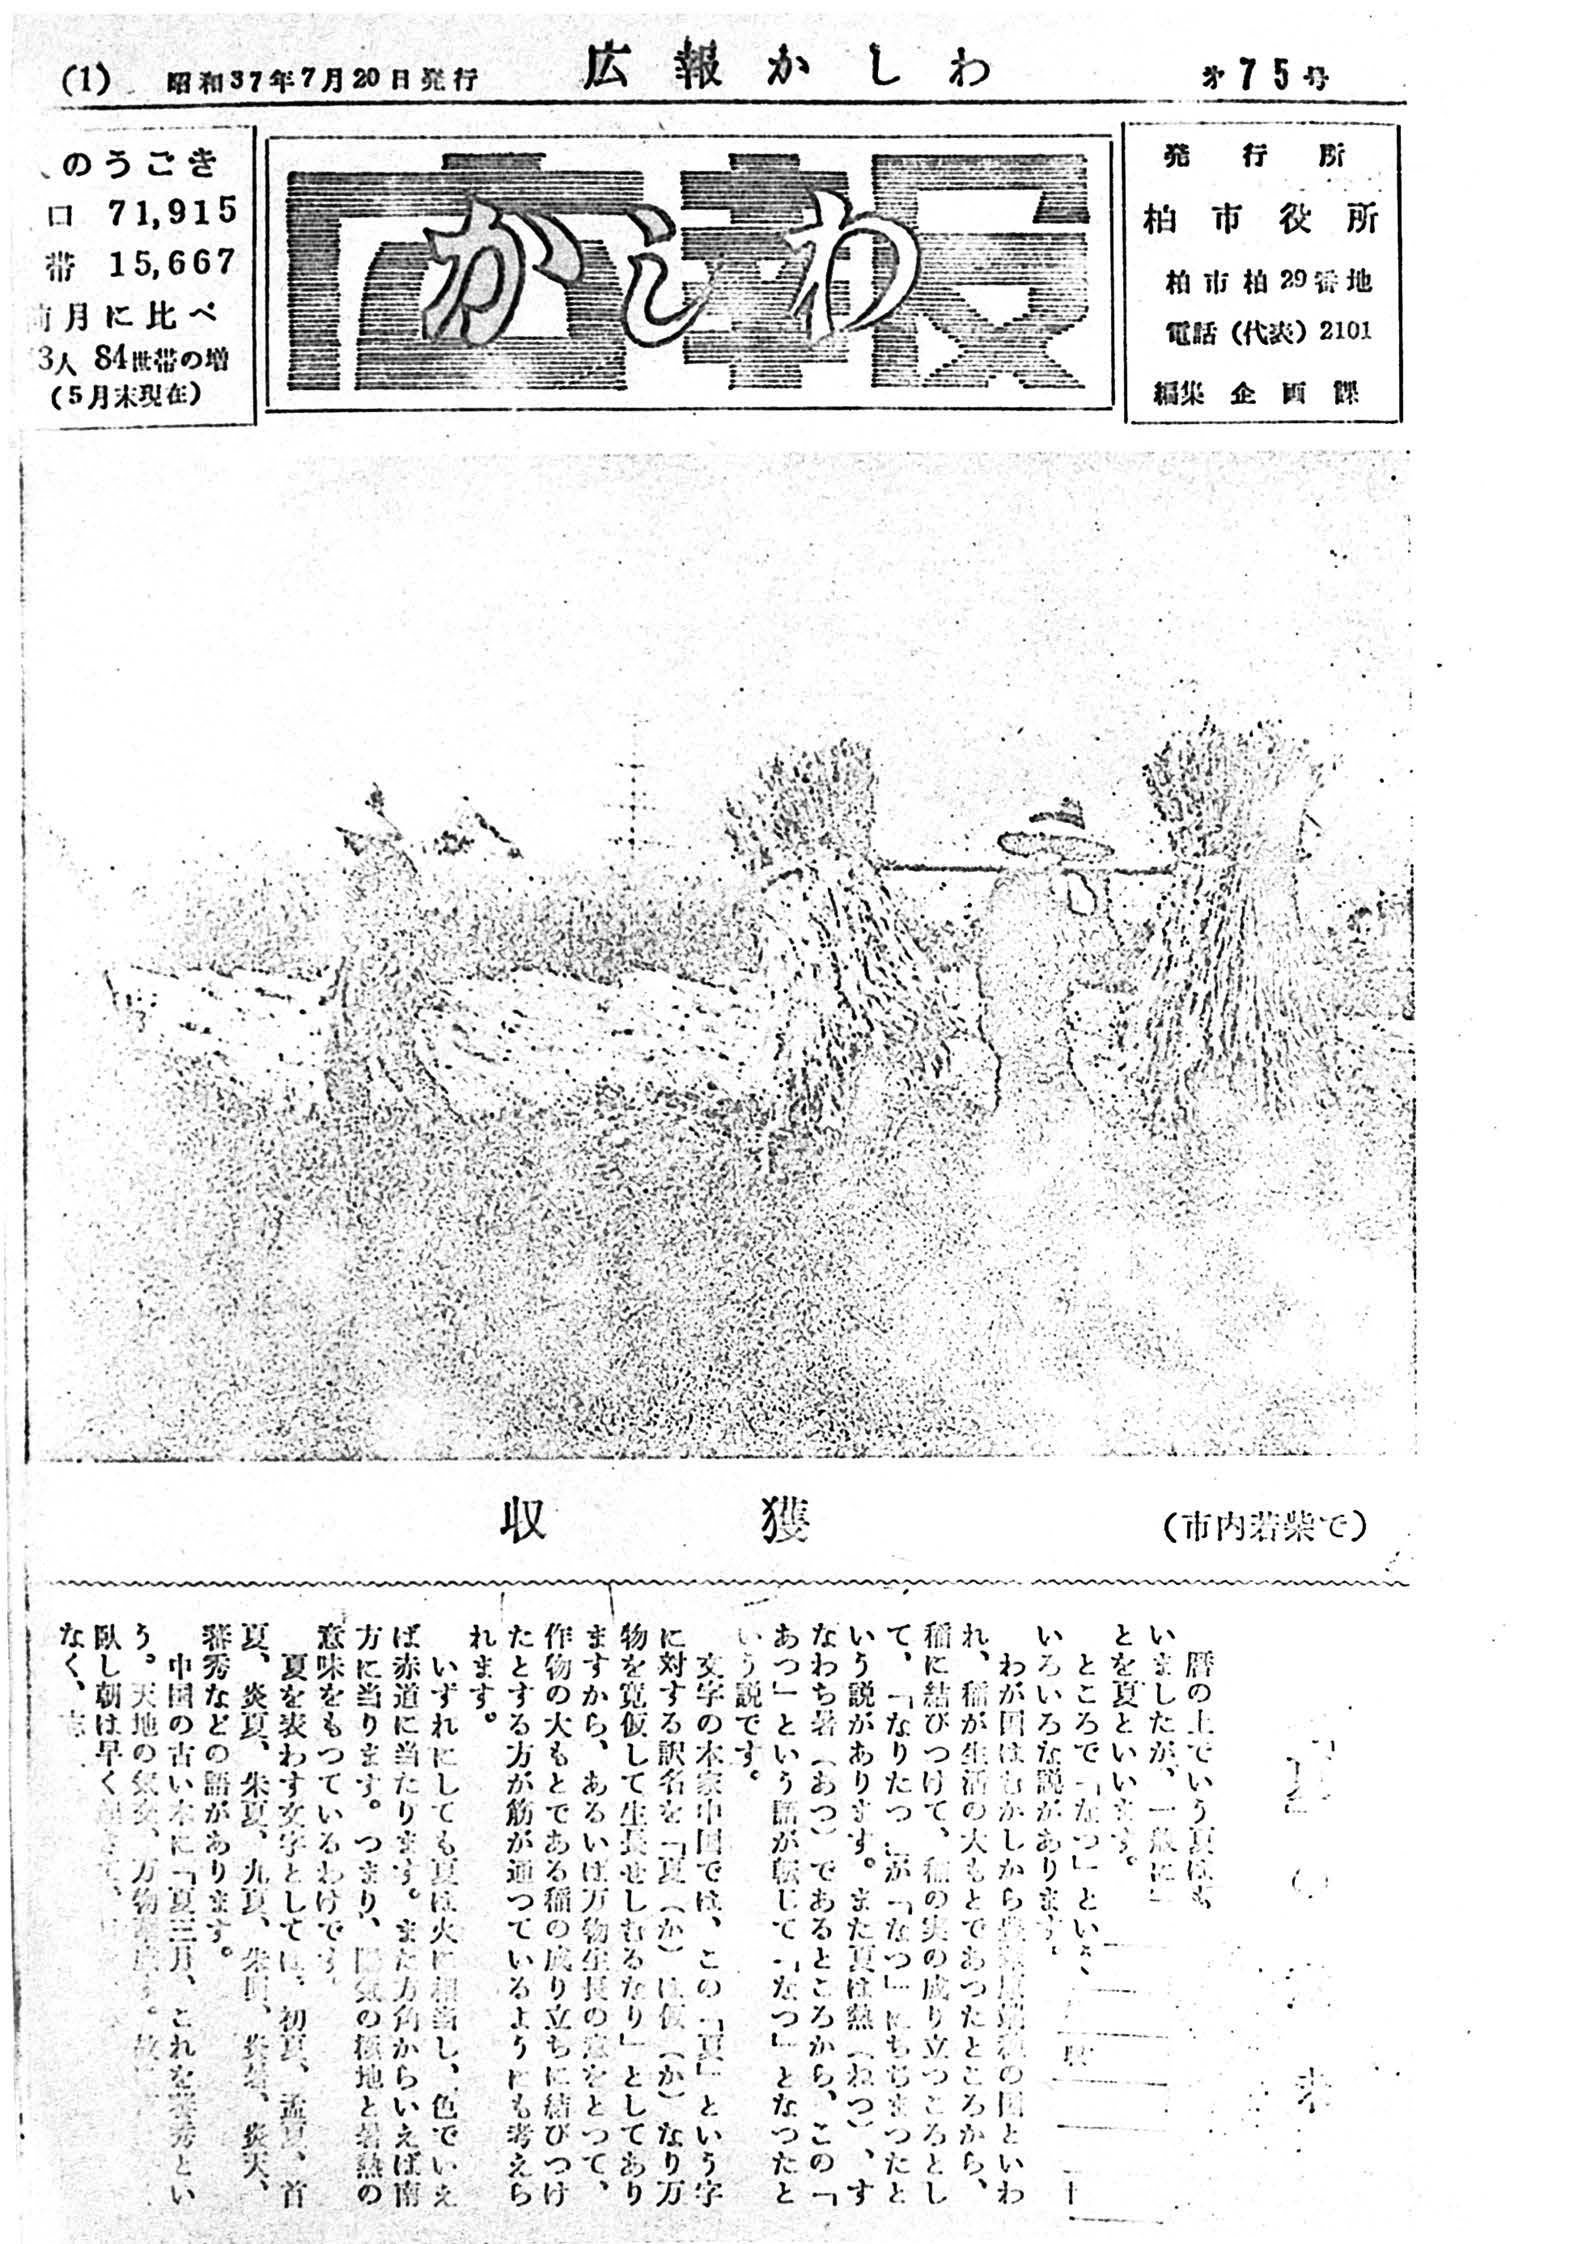 広報かしわ　昭和37年7月20日発行　75号